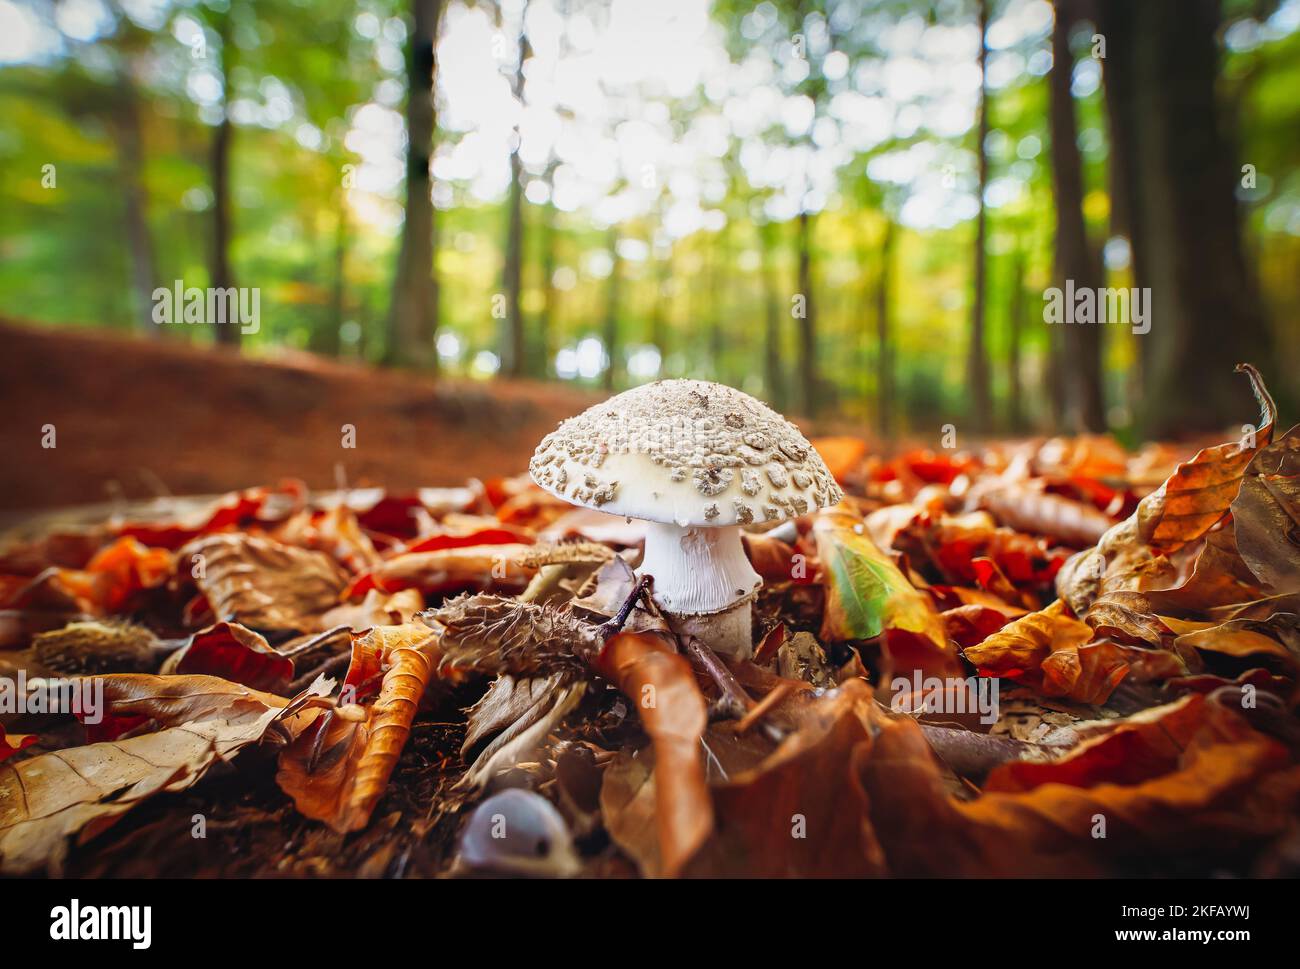 Fungo bianco con un grosso tappo tra le foglie di autunno giallite sullo sfondo. Foresta decidua, funghi. Fungo velenoso, fare attenzione, Foto Stock